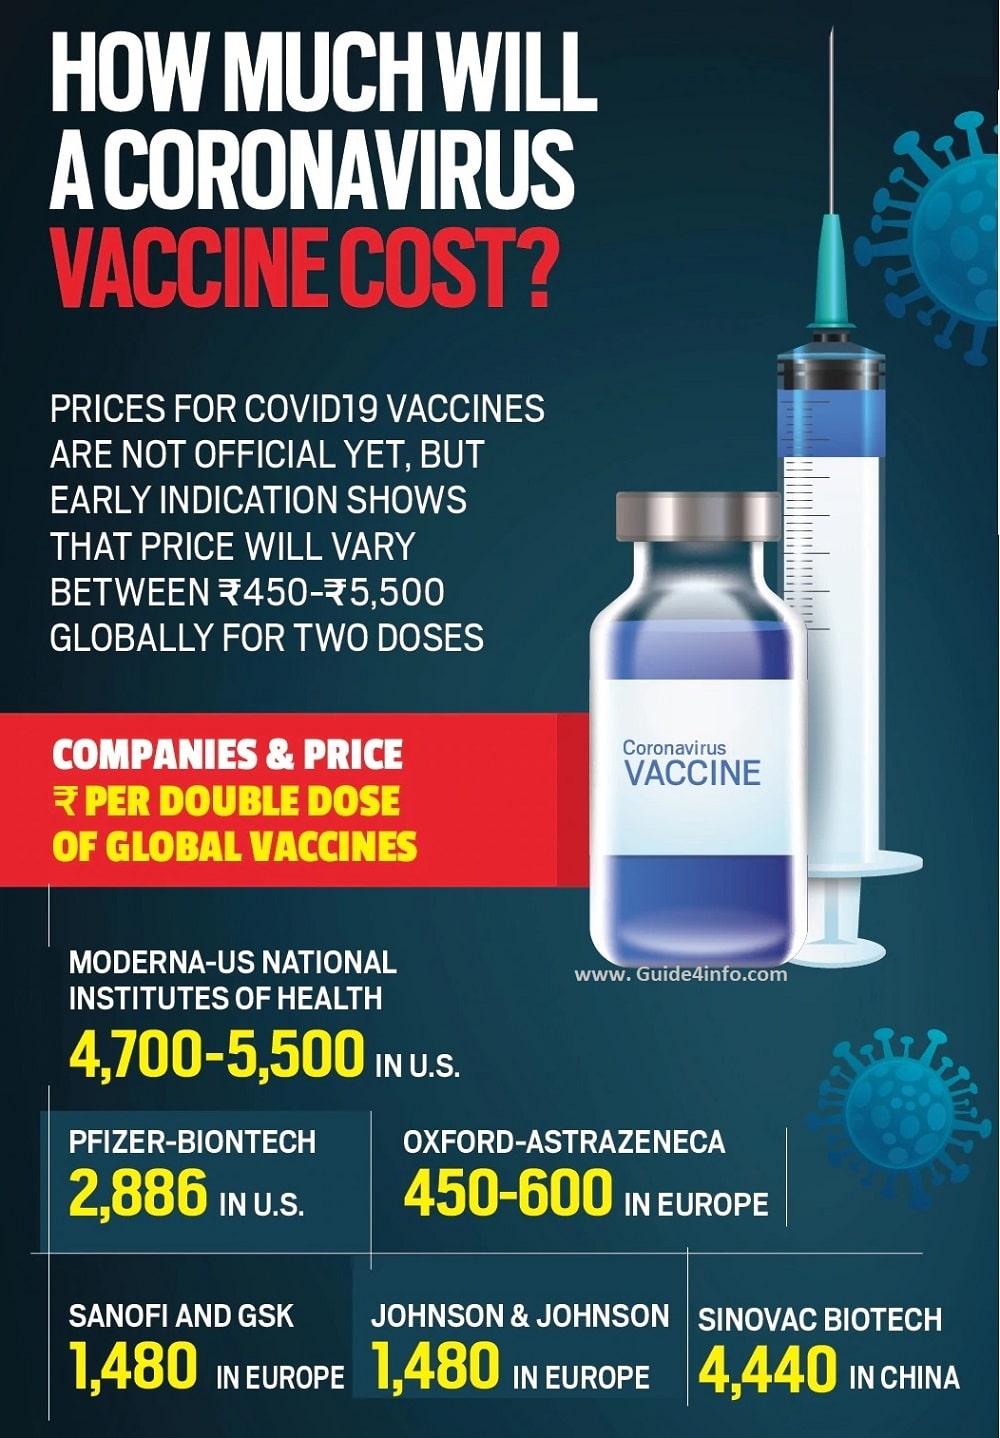 coronavirus vaccine price- Guide for info